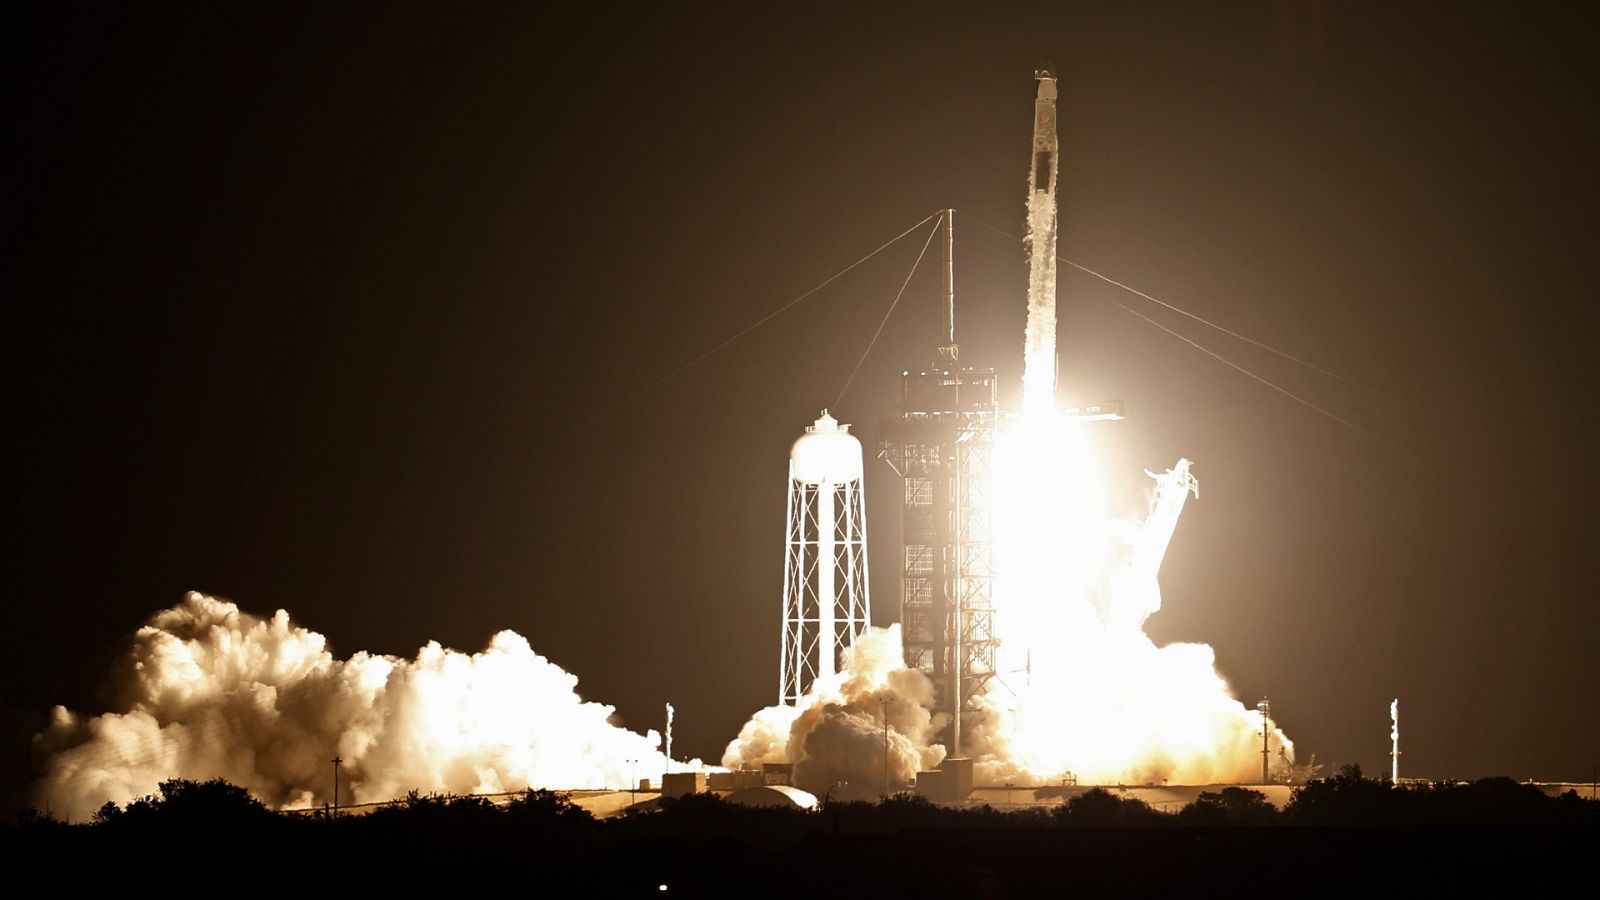 "Three, two, one...": despega con éxito la segunda misión tripulada de la NASA y SpaceX a la Estación Espacial Internacional